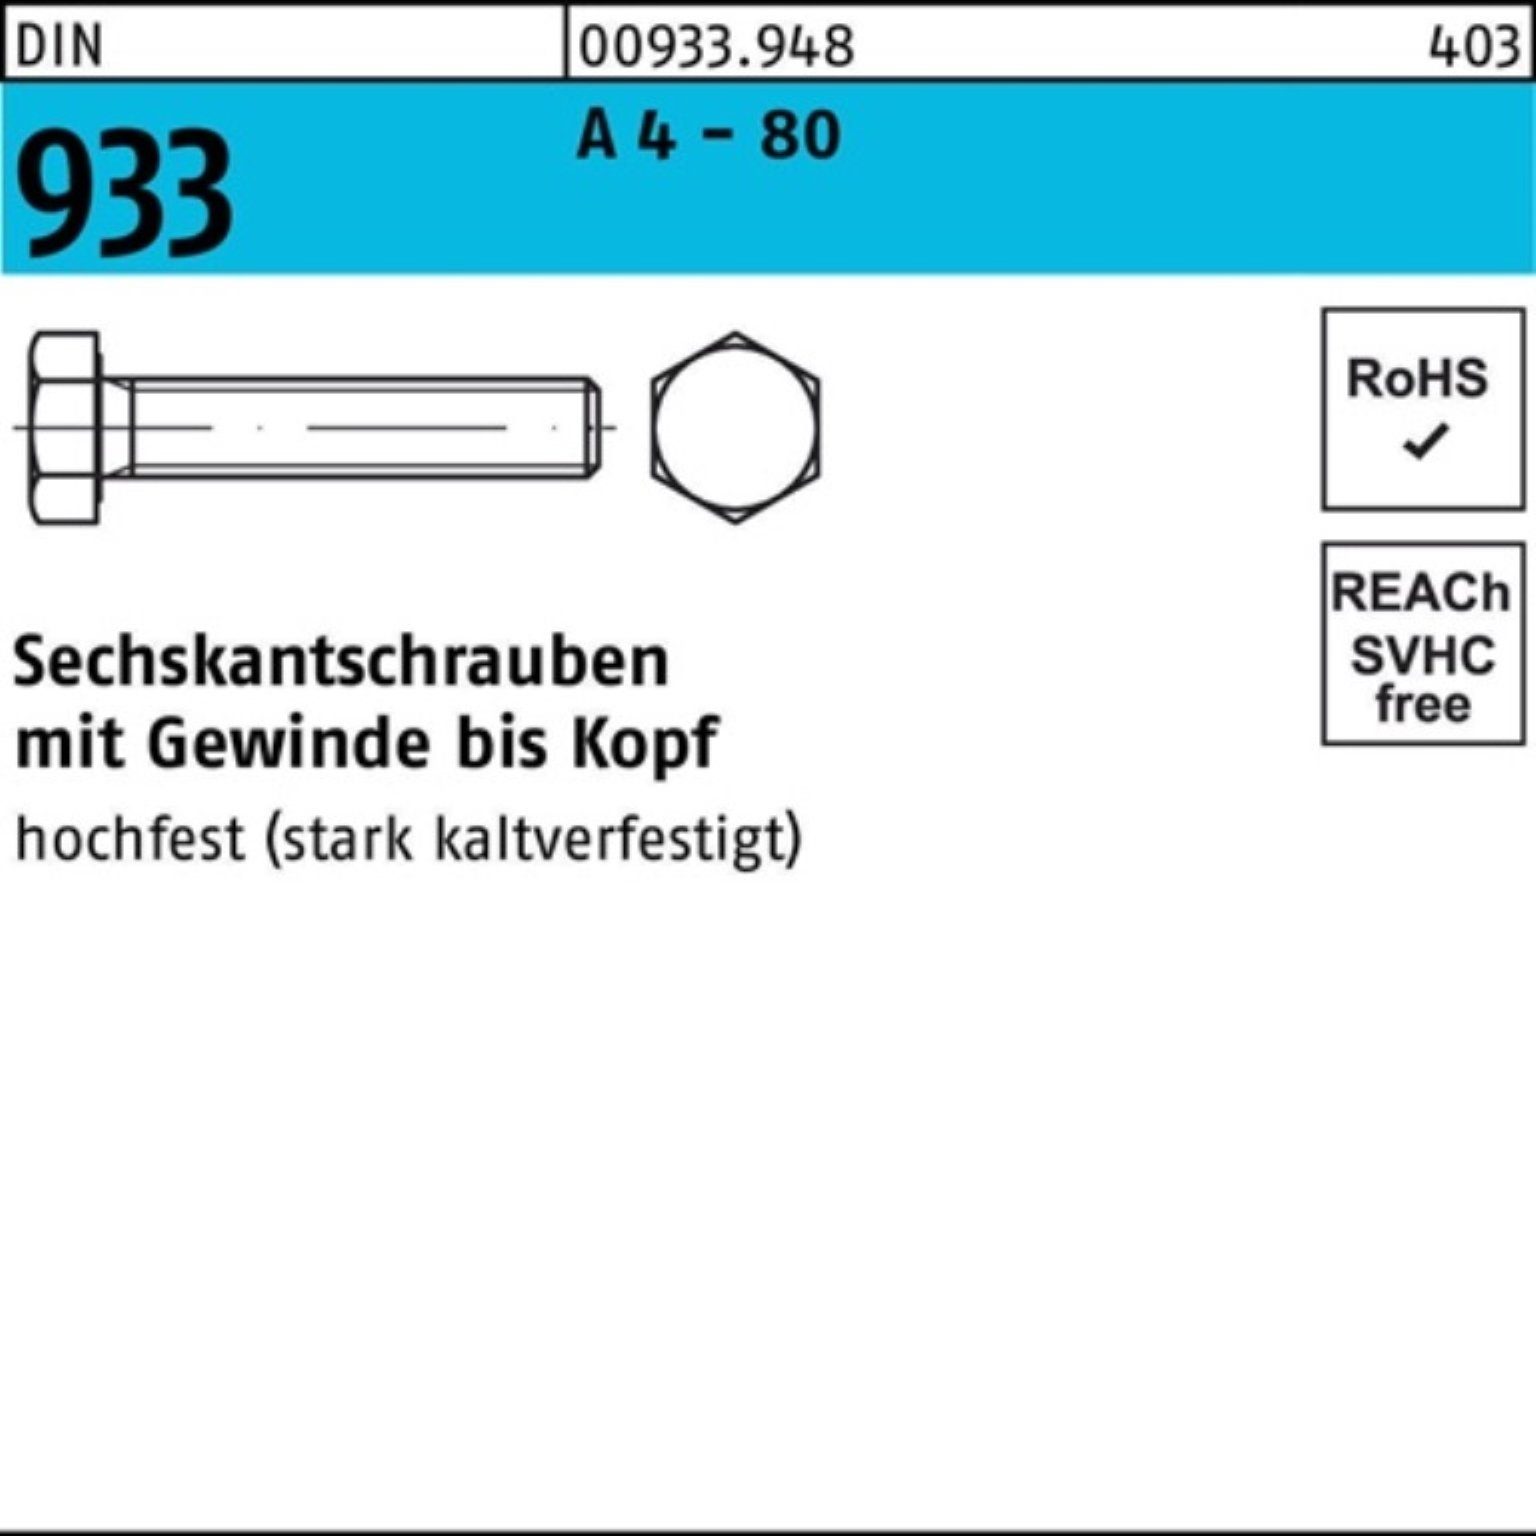 Reyher Sechskantschraube 100er Pack Sechskantschraube DIN 933 VG M10x 20 A 4 - 80 100 Stück DI